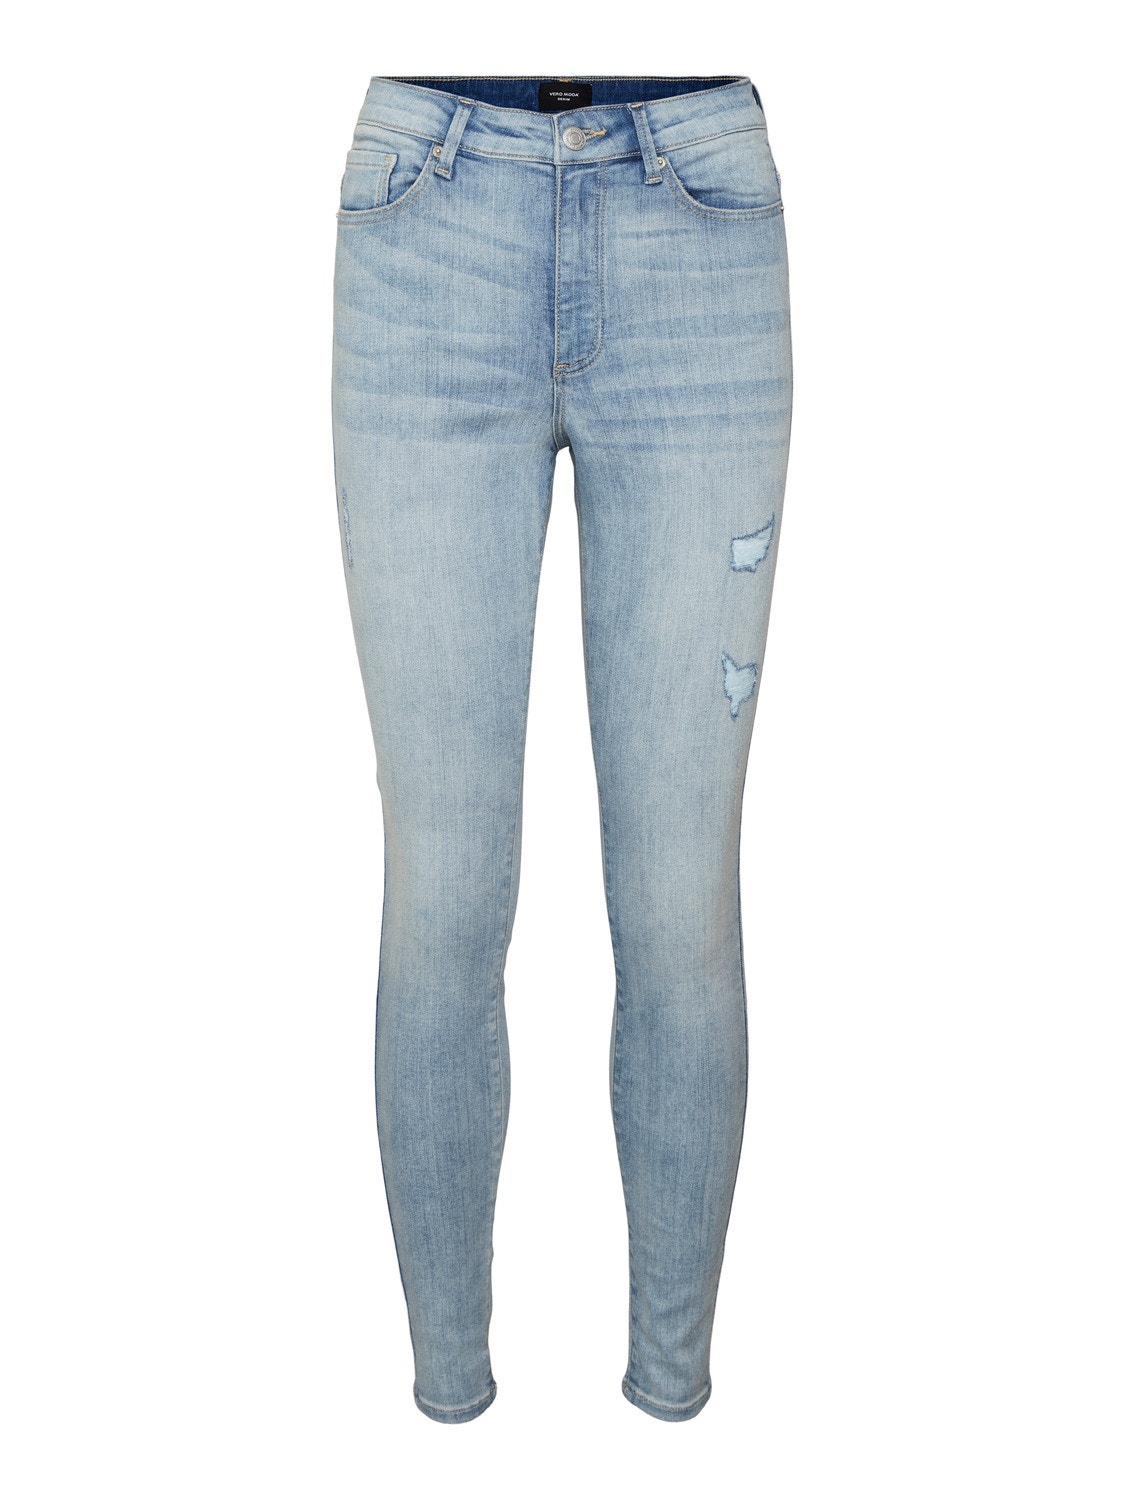 Vero Moda VMSOPHIA High rise Skinny Fit Jeans -Light Blue Denim - 10225526